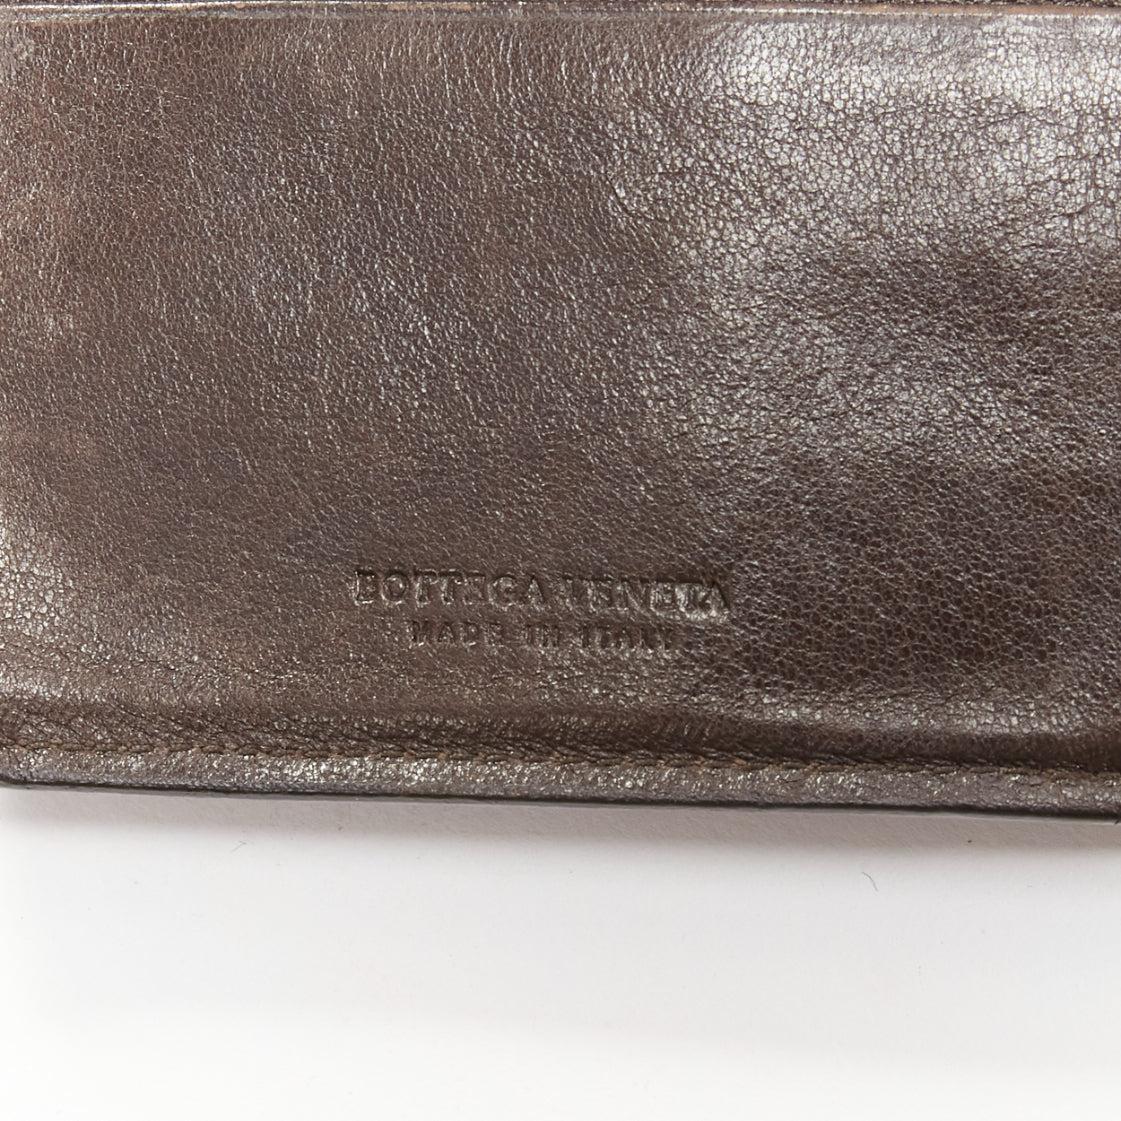 BOTTEGA VENETA portefeuille long en cuir intrecciato tressé marron avec fermeture éclair dorée en vente 4